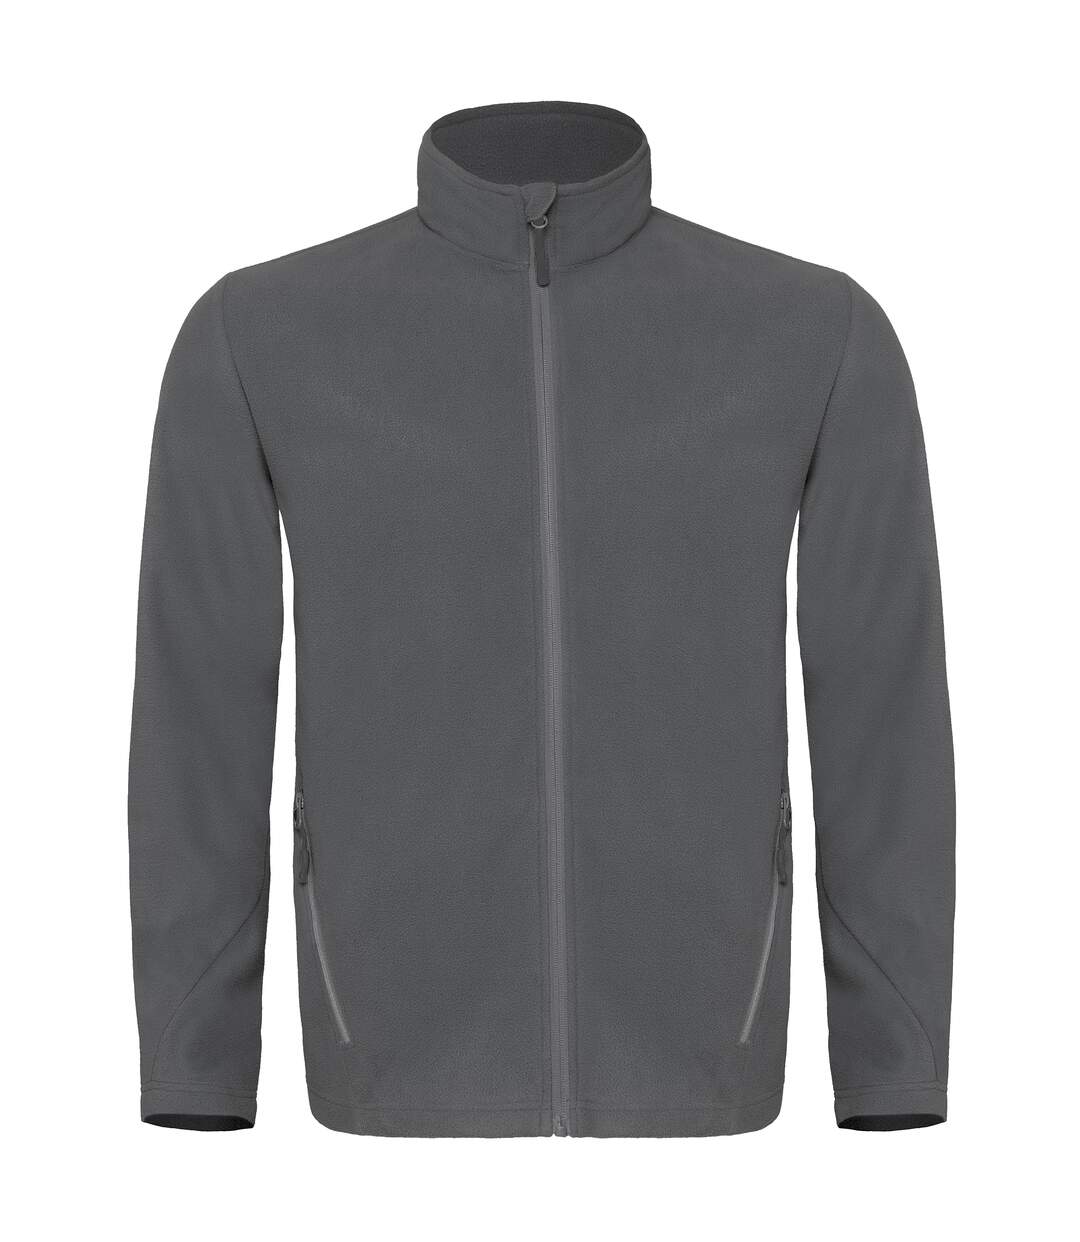 B&C Mens Coolstar Ultra Light Full Zip Fleece Top (Steel Grey) - UTRW3033